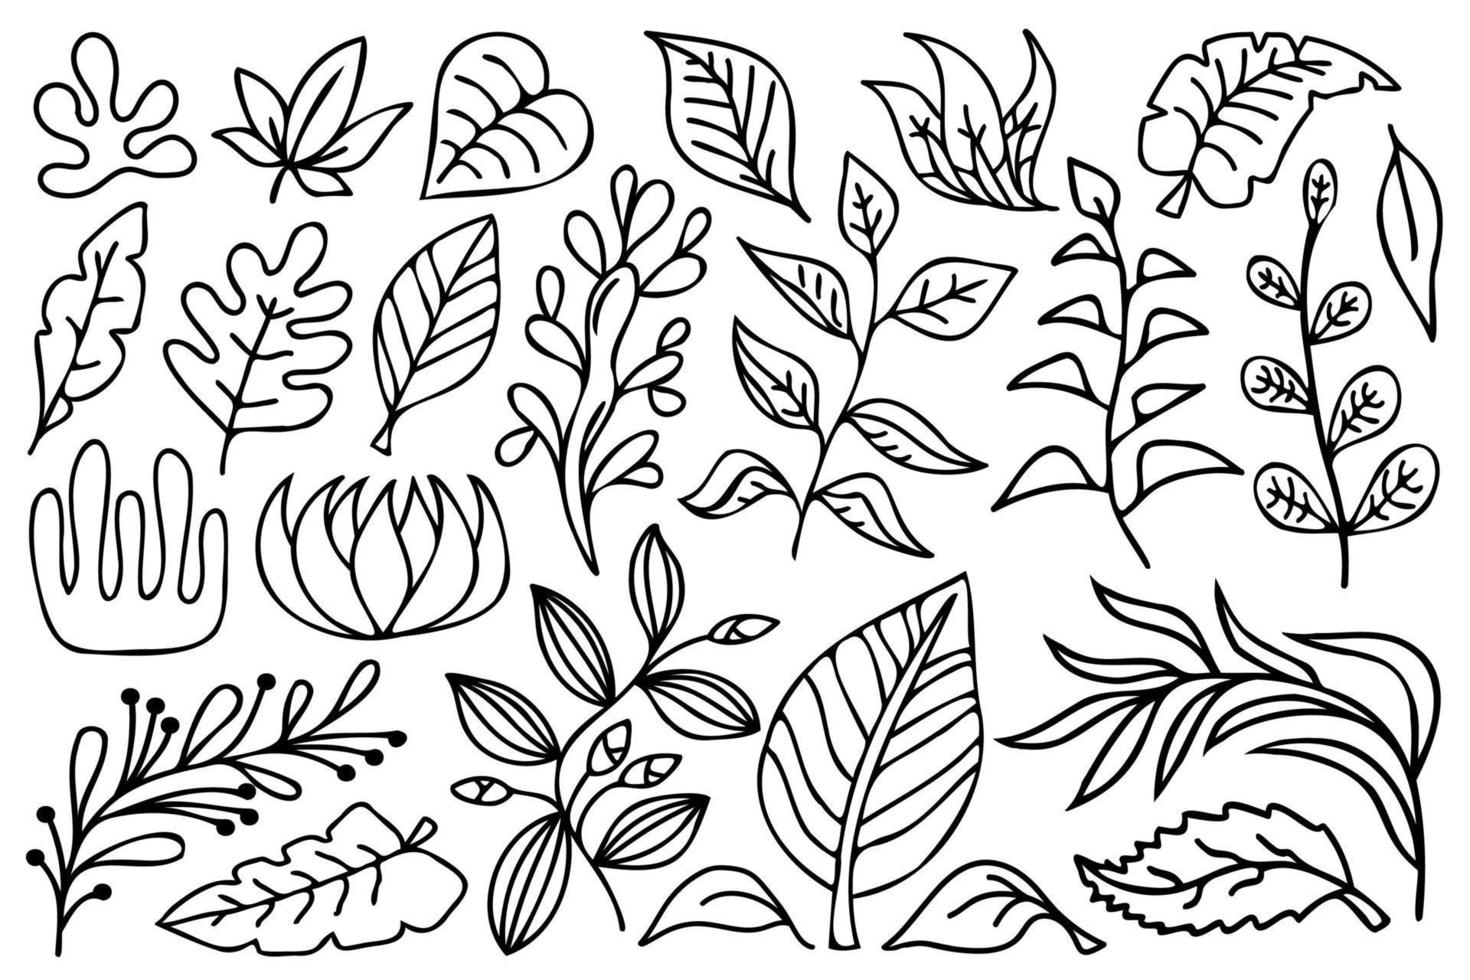 zwarte omtrek botanische ontwerpelementen. lijn kunst bloemen, takken en bladeren, zwart-witprinter vector illustratie set.